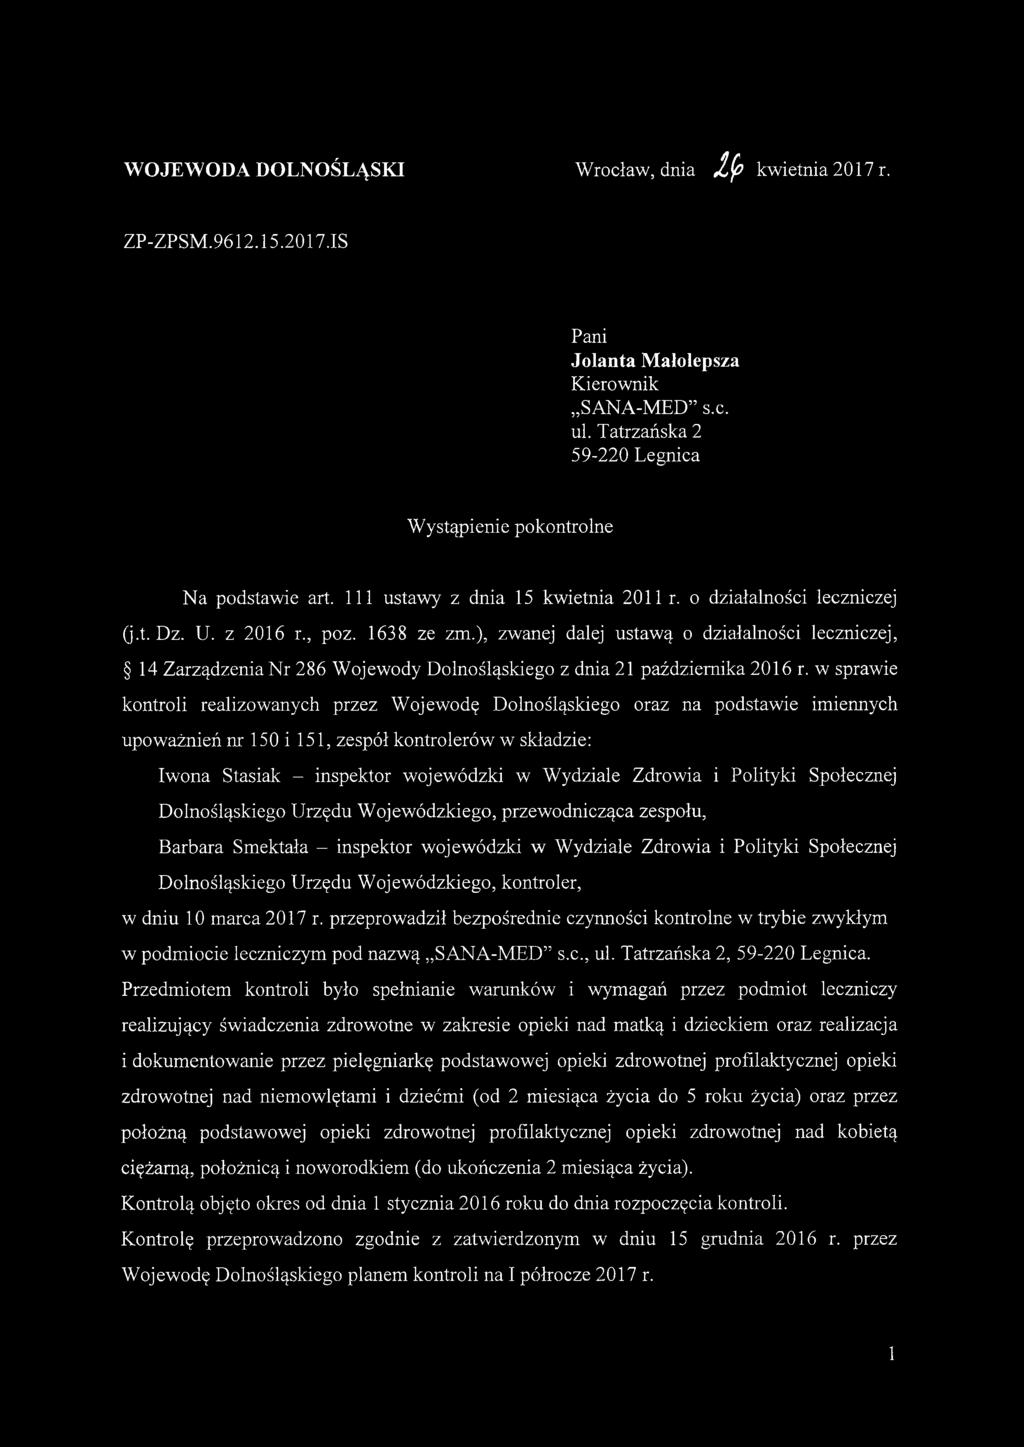 ), zwanej dalej ustawą o działalności leczniczej, 14 Zarządzenia Nr 286 Wojewody Dolnośląskiego z dnia 21 października 2016 r.